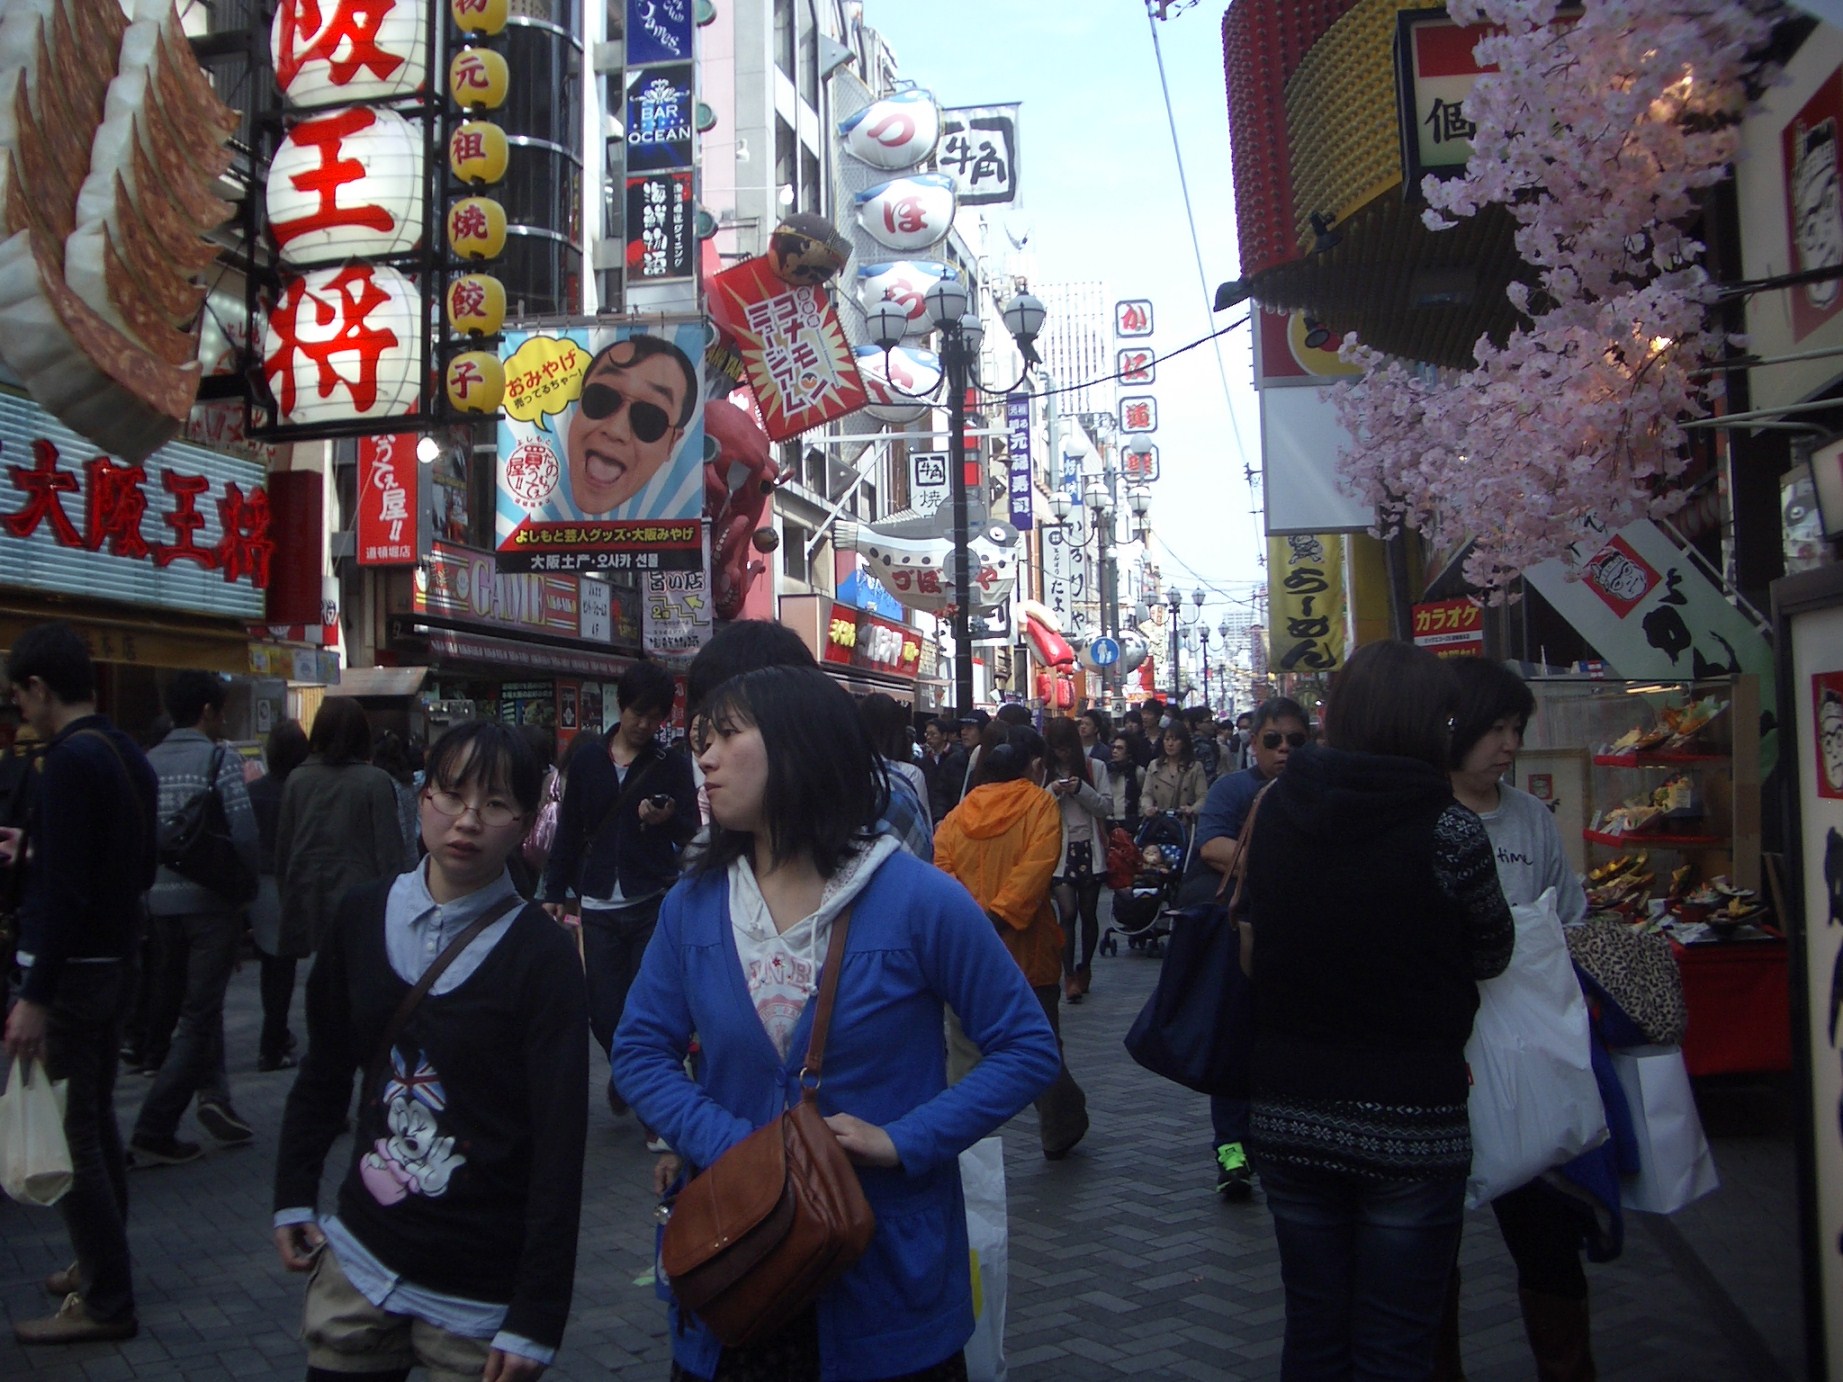 Massen in der Einkaufsstraße Shinsaibashi